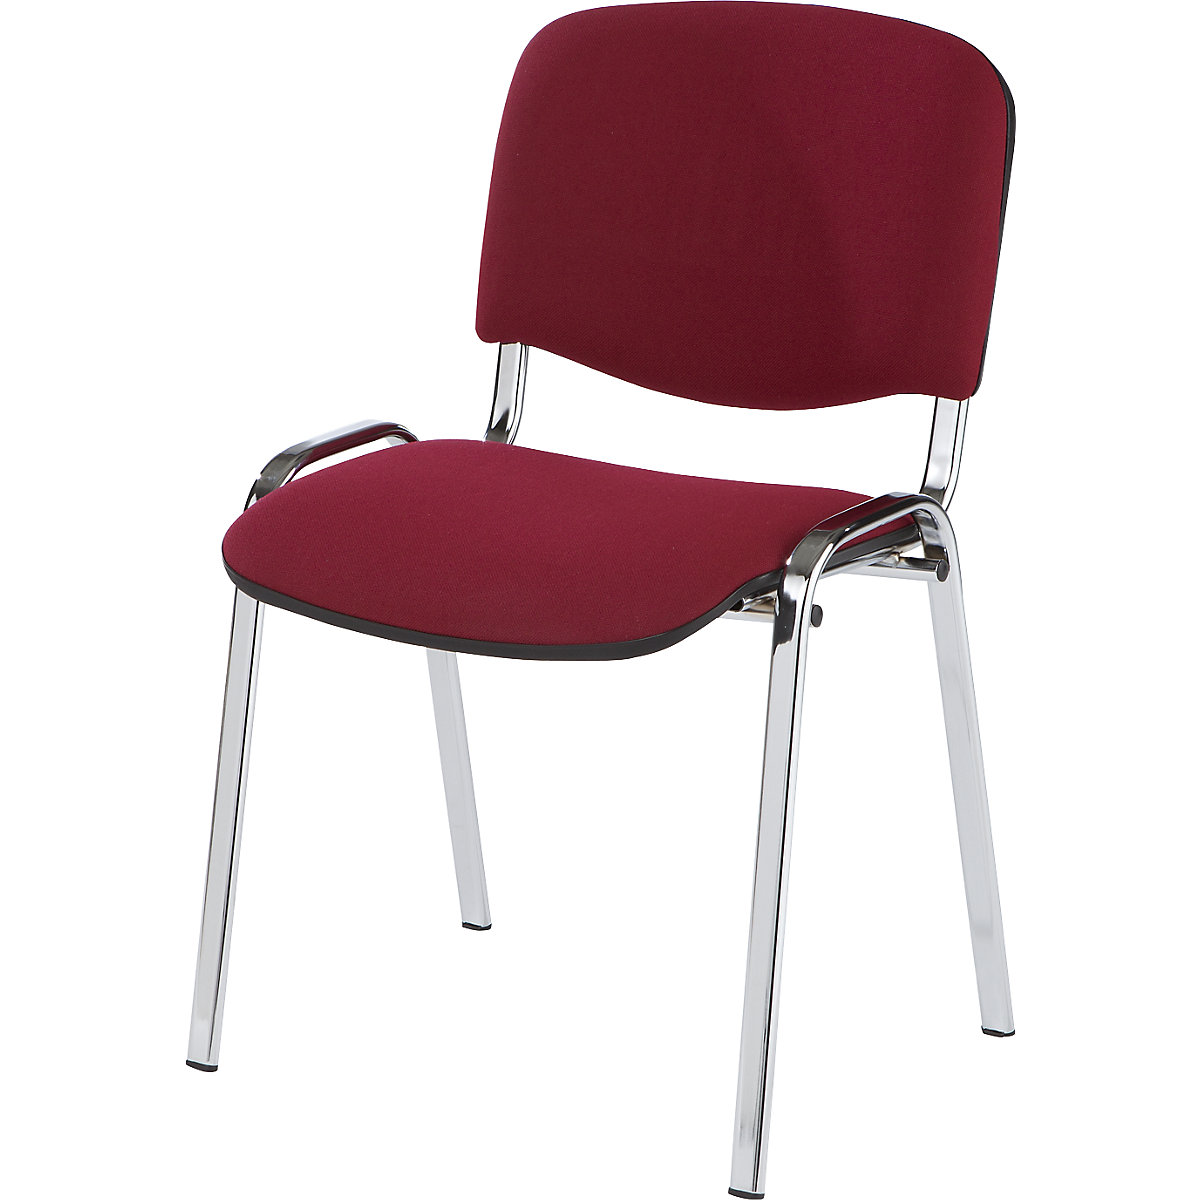 Bezoekersstoel, stapelbaar, rugleuning met bekleding, stoelframe verchroomd, bekleding bordeaux, VE = 2 stuks-6